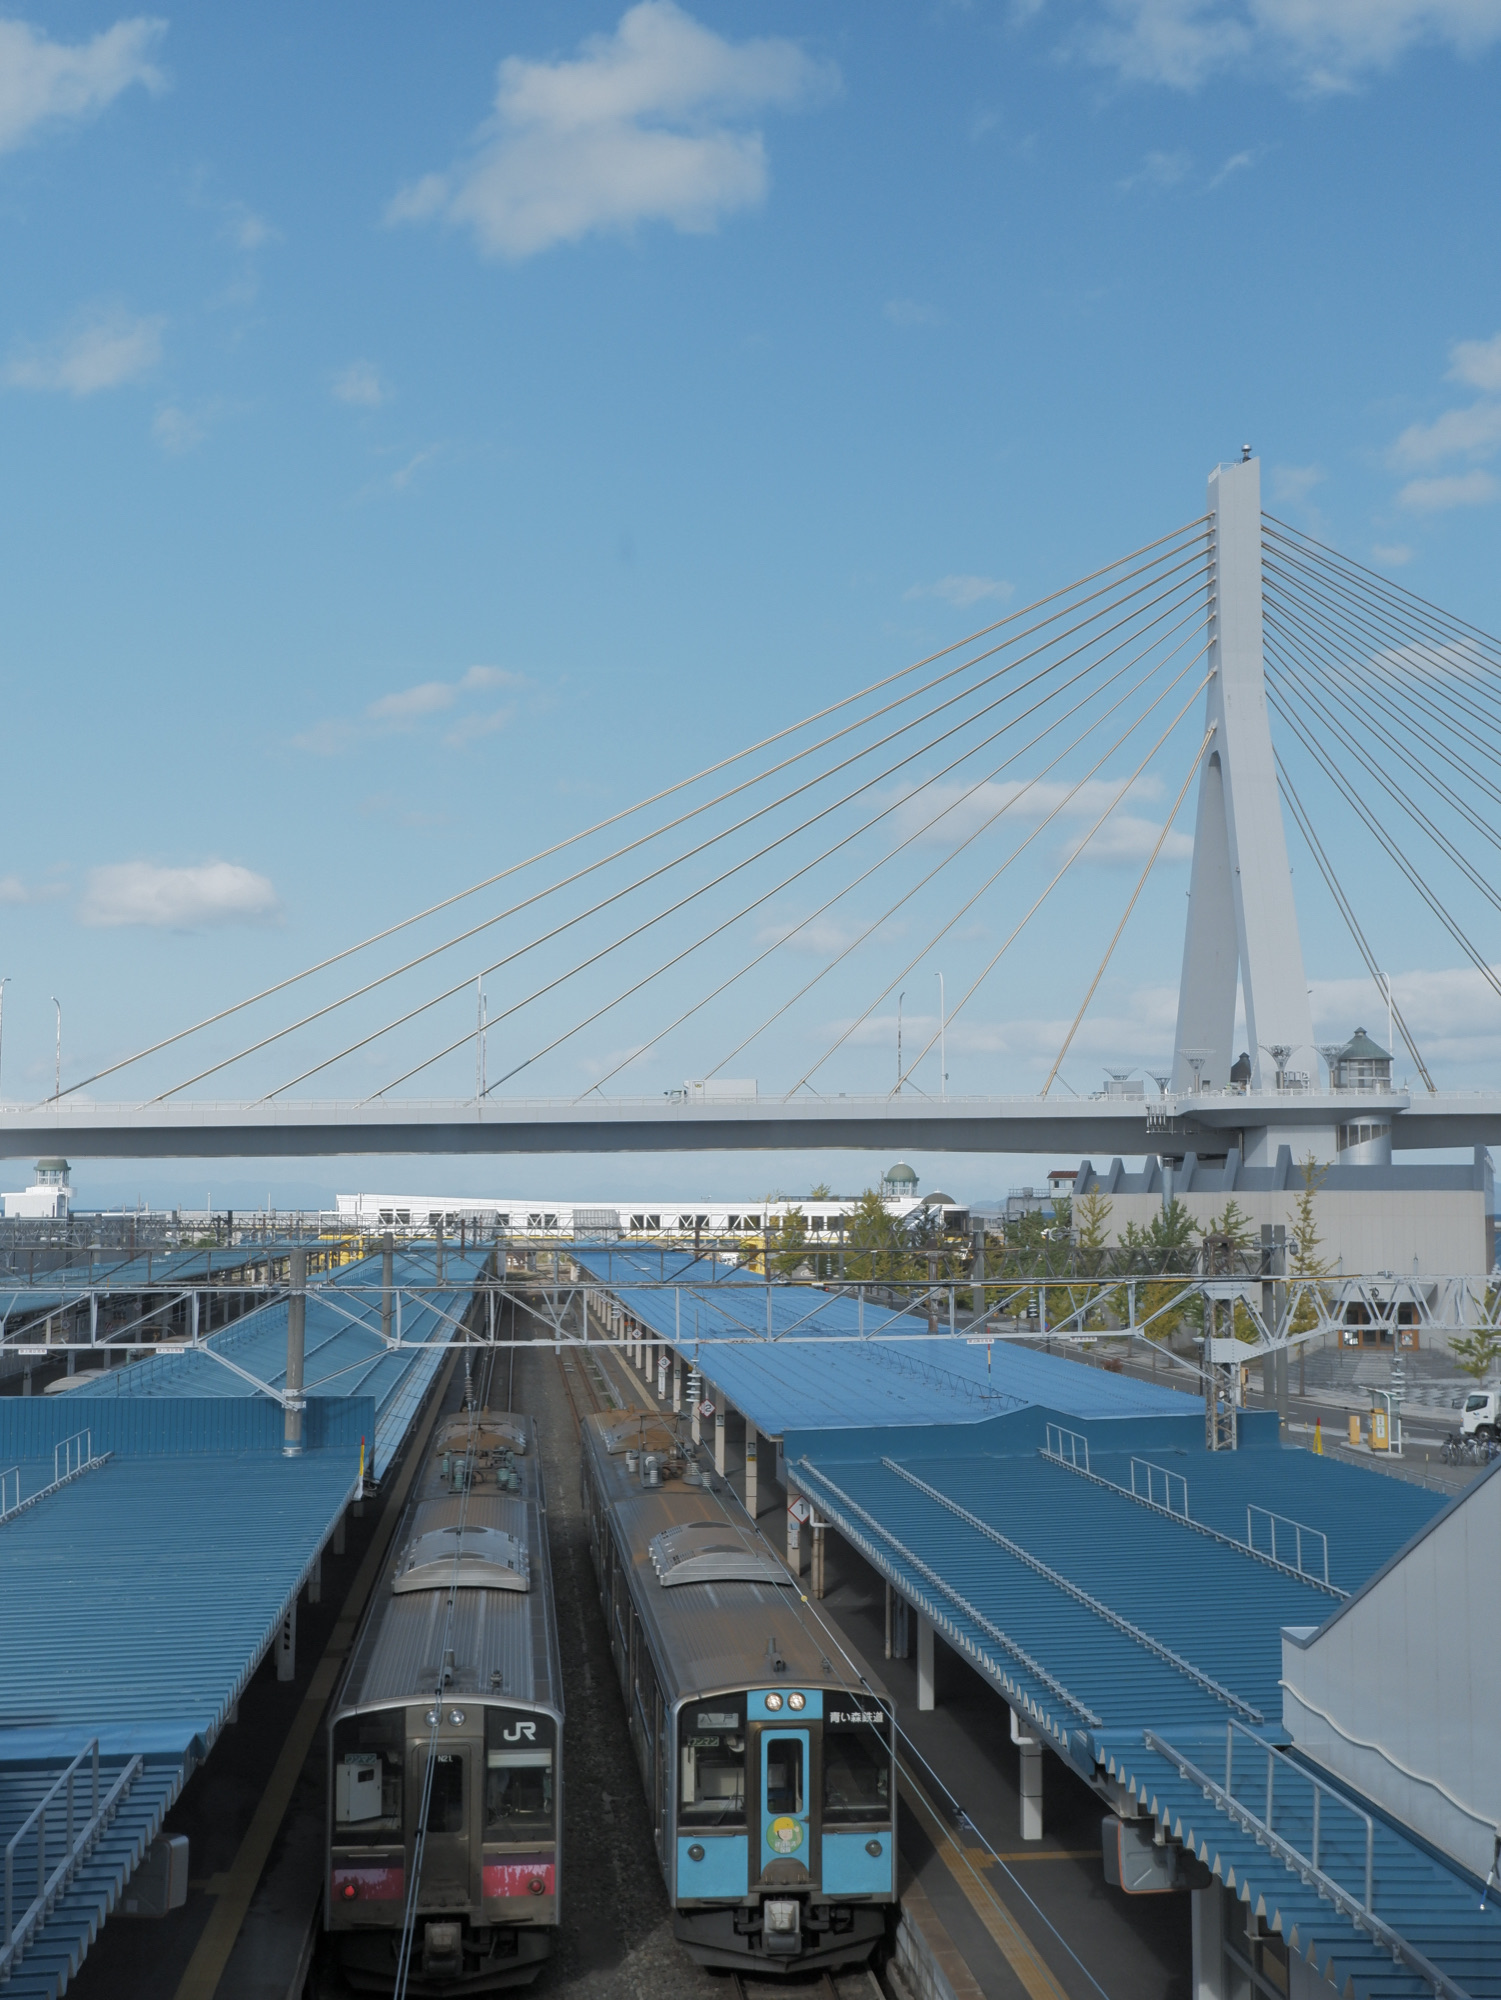 【日本东北】青森市:青森湾大桥、WARASSE、A-Factory,感受日本北部之美!